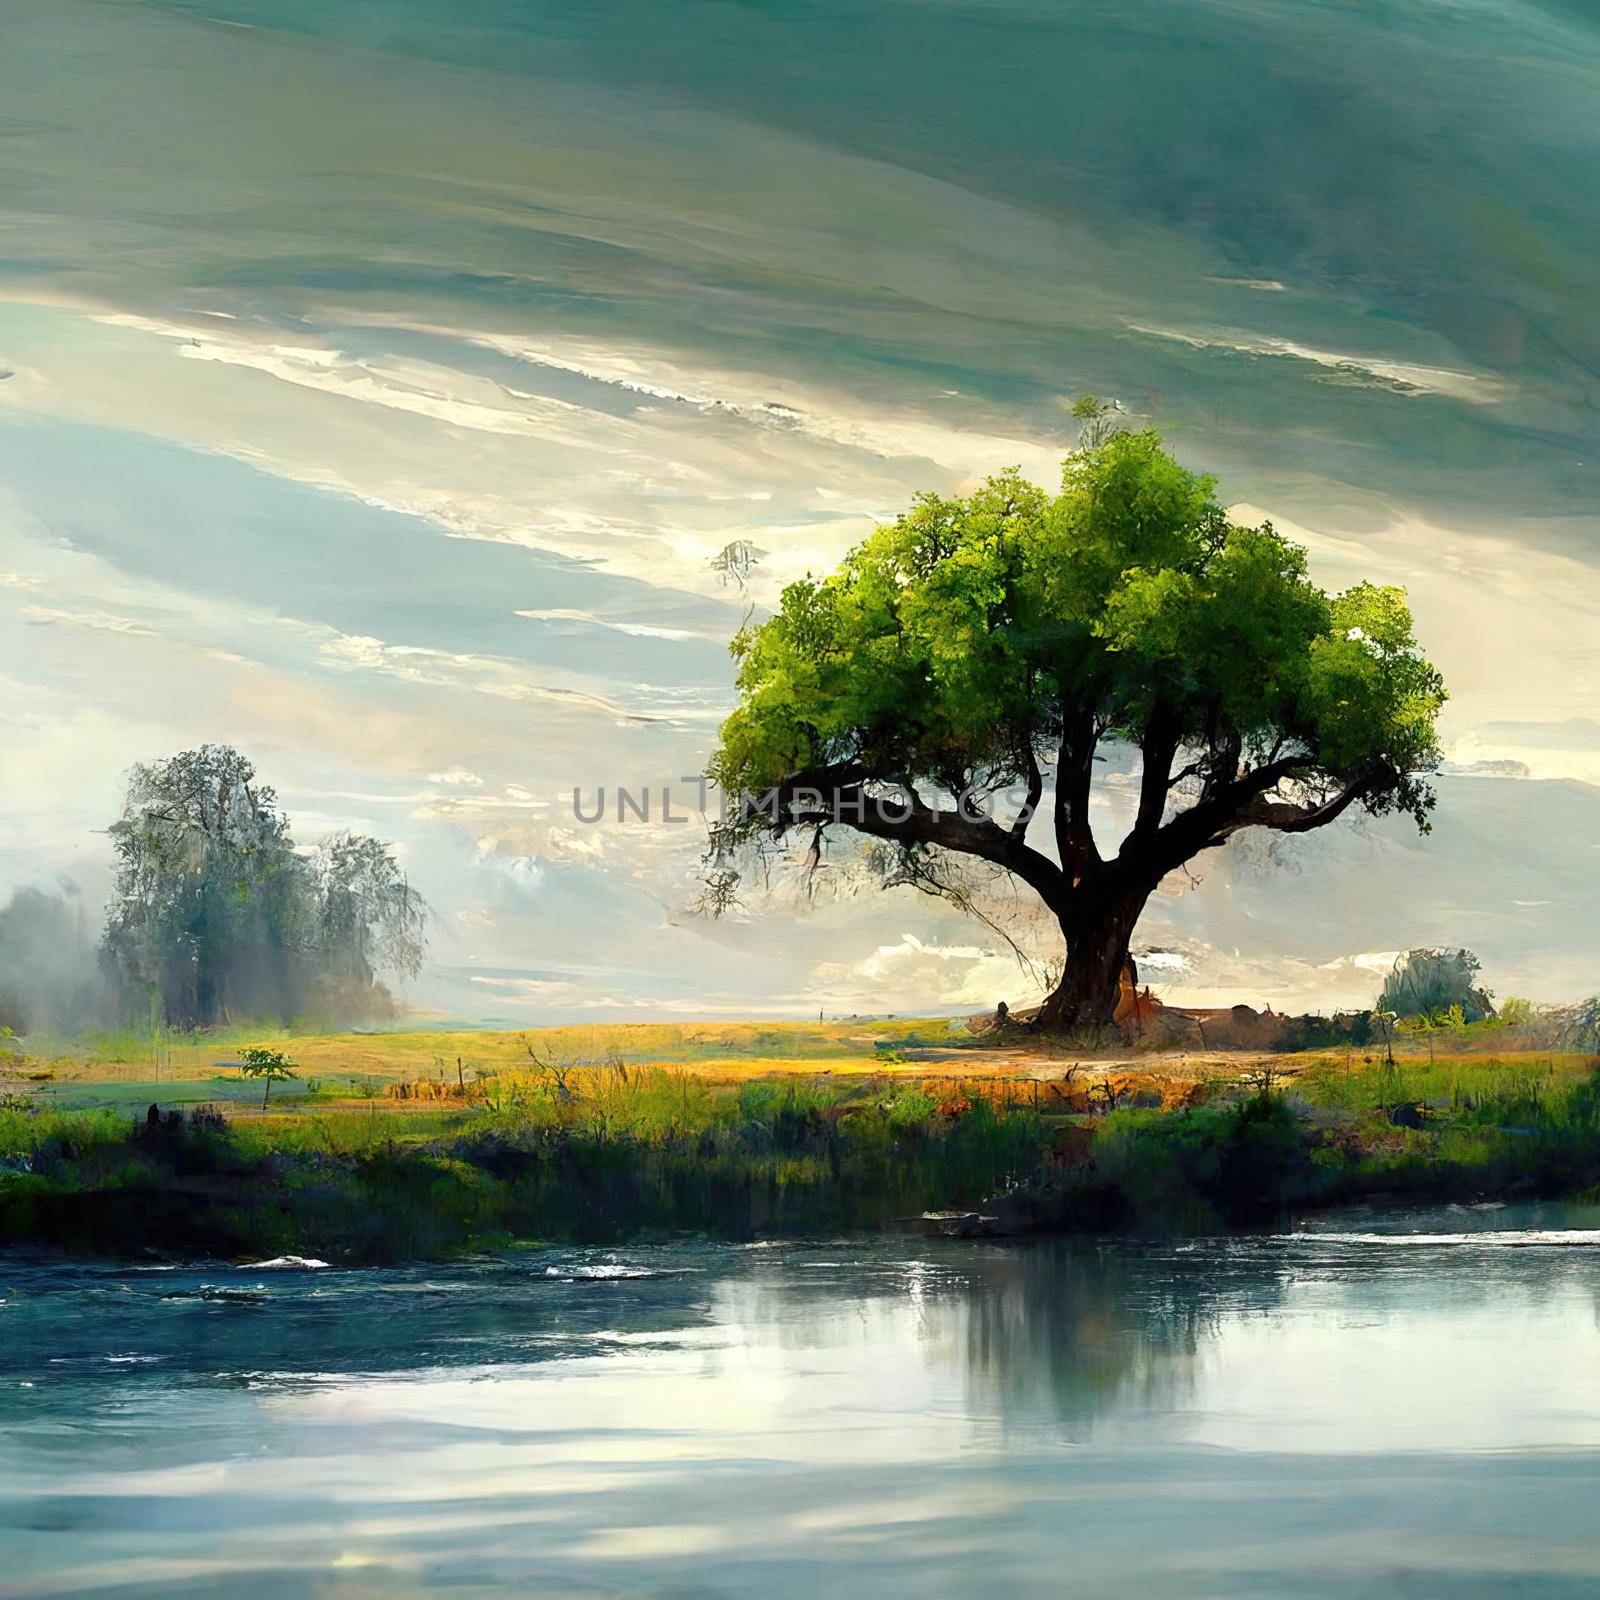 Digital painting of a peaceful nature scene, digital art, Illustration